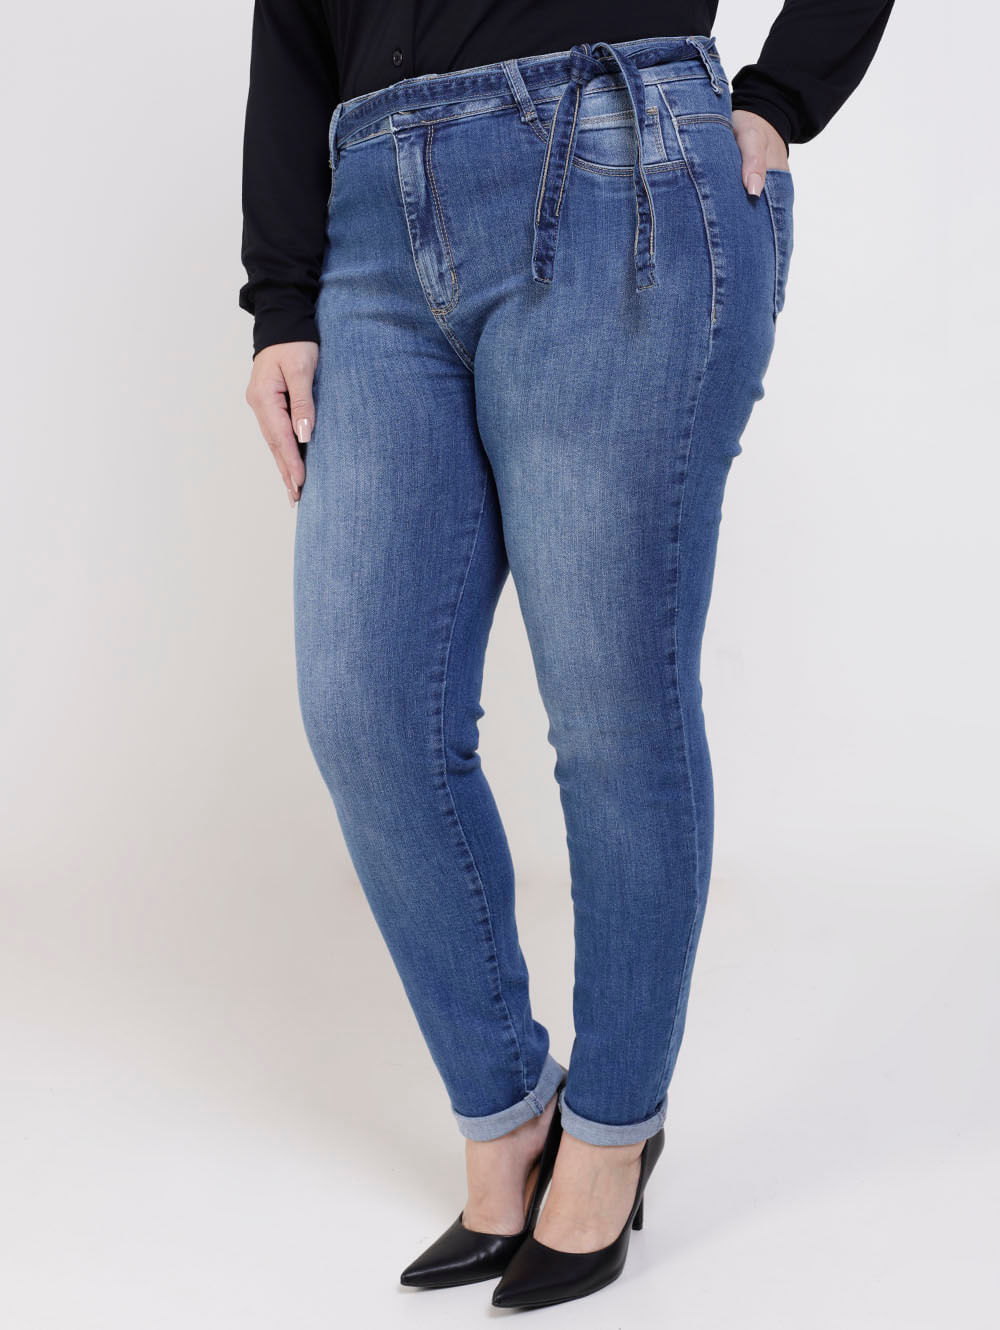 https://lojaspompeia.vtexassets.com/arquivos/ids/707714/149700-calca-jeans-plus-oppnus-azul4.jpg?v=637914285744230000